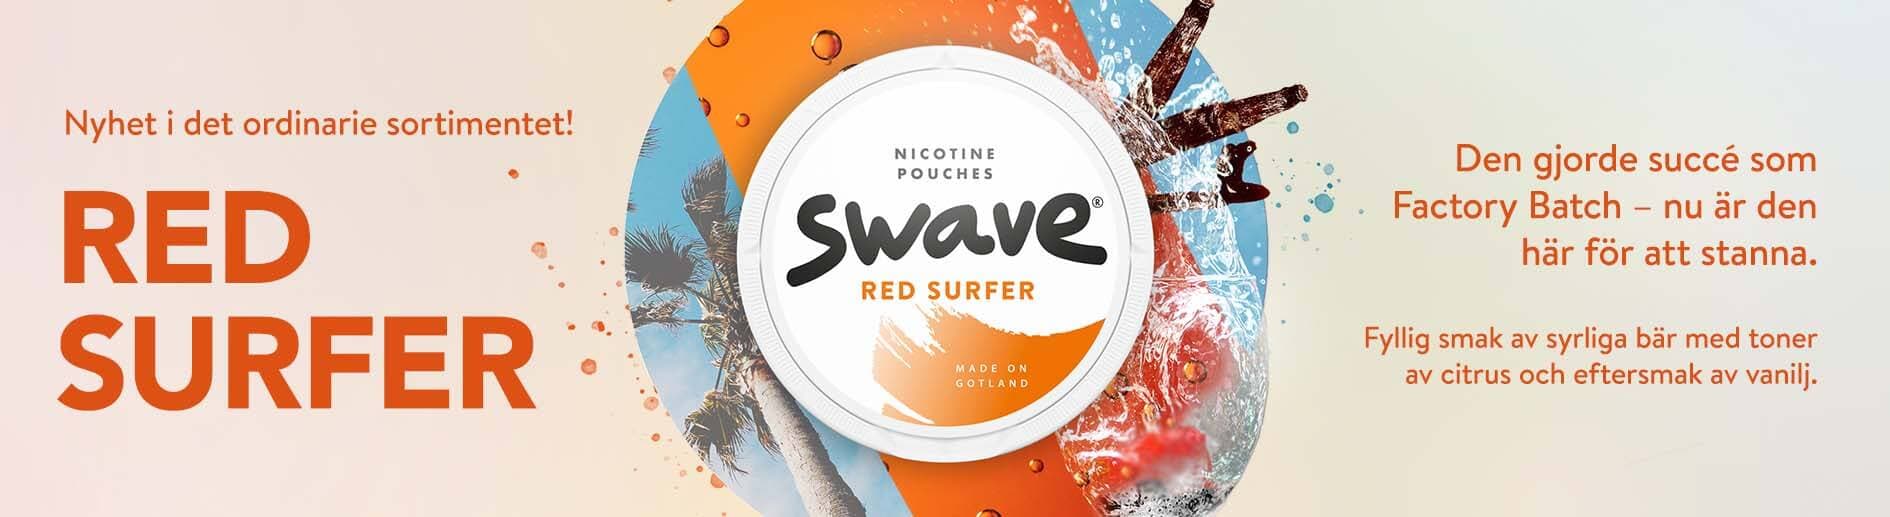 Swave Red Surfer lanseras idag